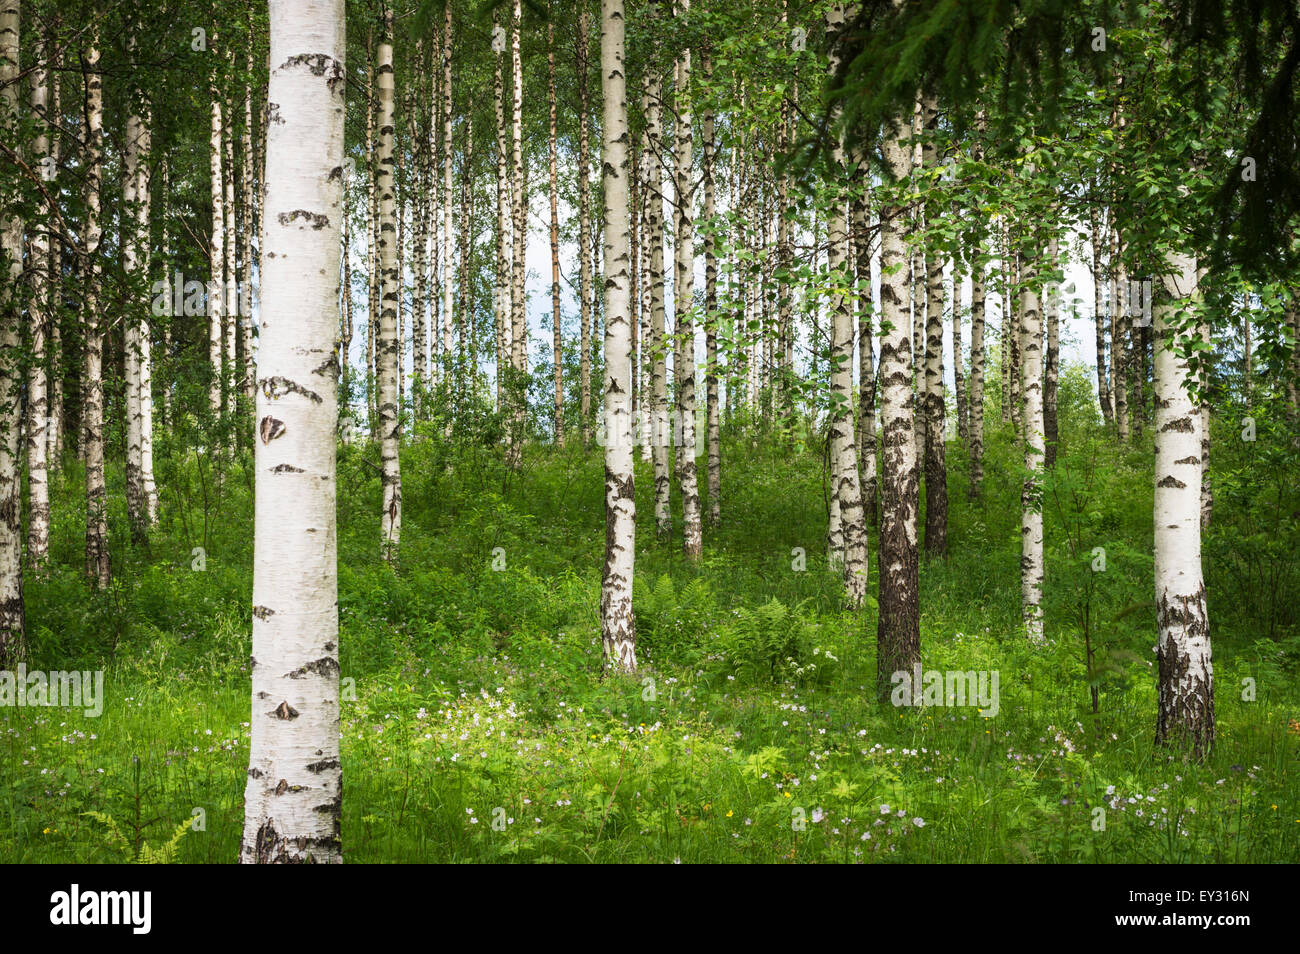 Bois de bouleau en vert couleurs d'été au milieu de l'été, le bouleau blanc sur le tronc des arbres et des arbustes, l'herbe vert vif, et le feuillage Banque D'Images